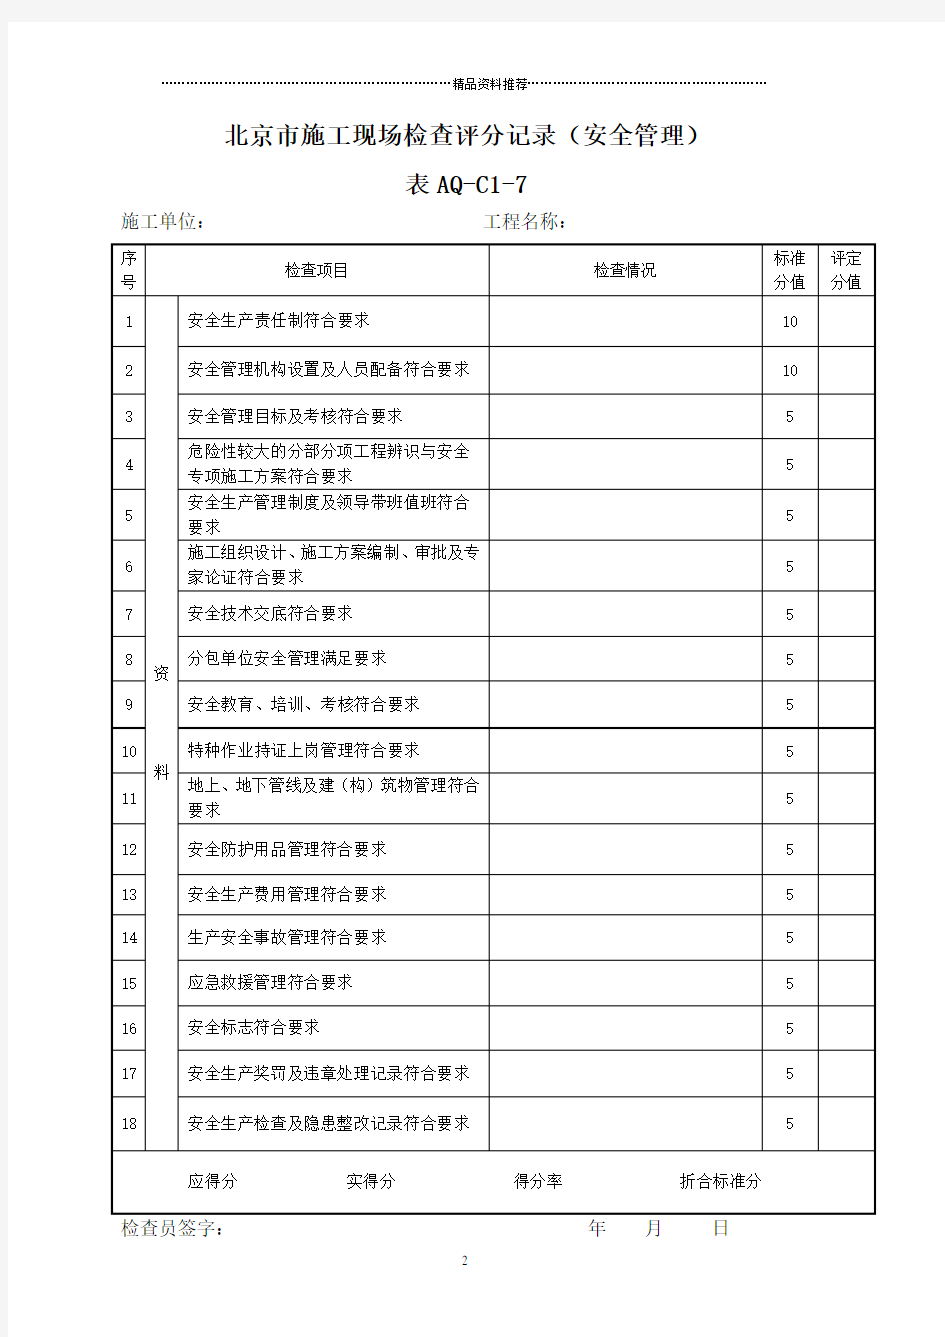 (十张表)安全资料管理规程施工现场评分表及评分说明